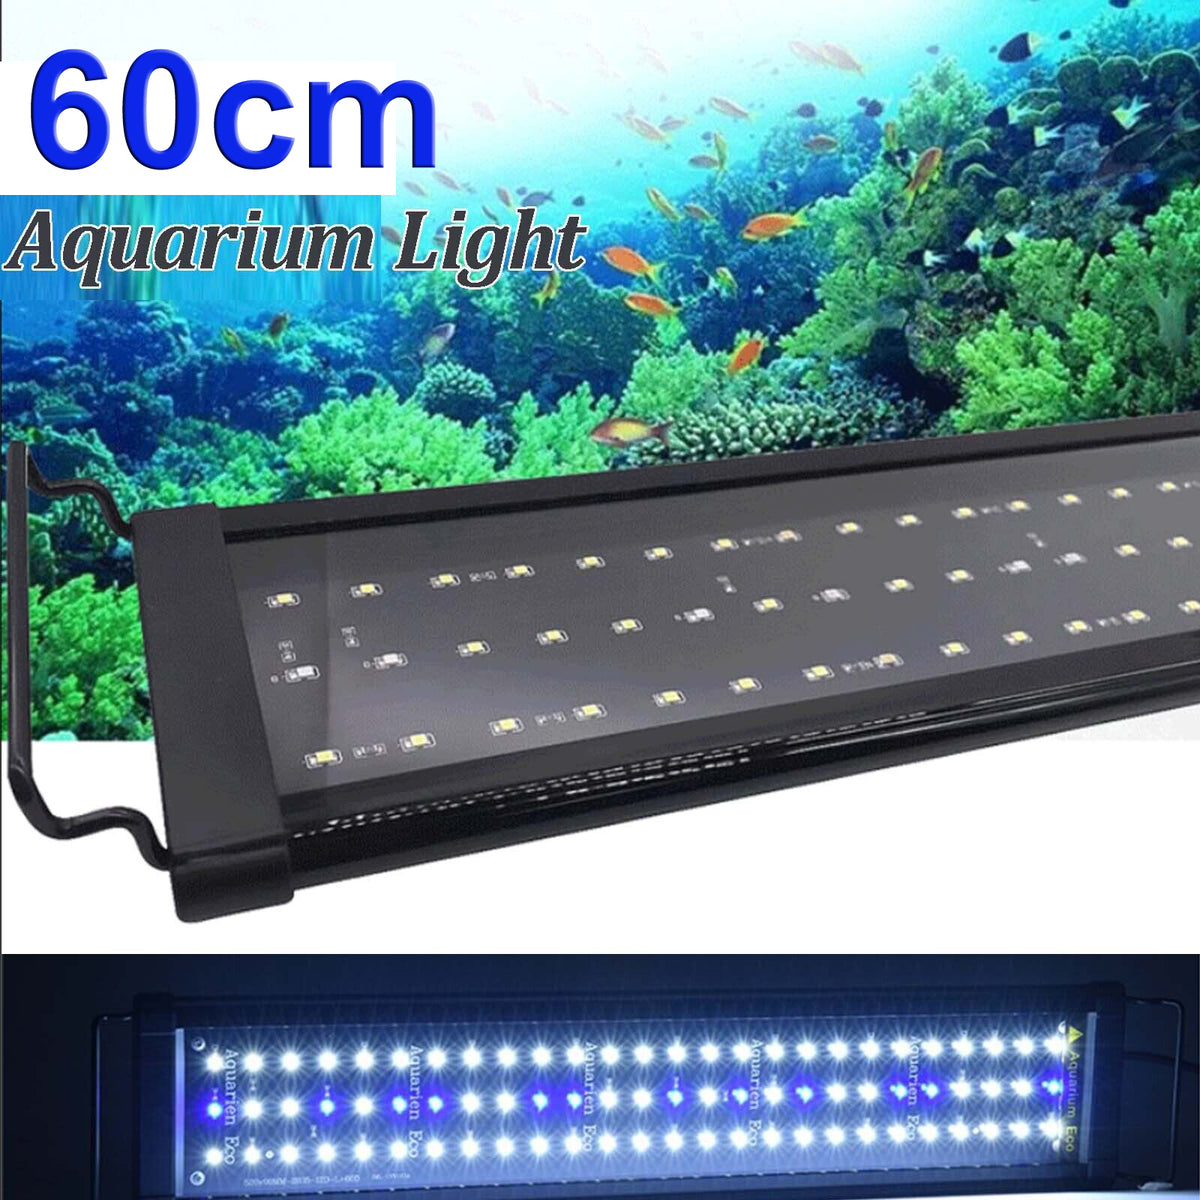 60cm Aquarium Light Lighting Full Spectrum Aqua Plant Fish Tank Bar LED Lamp